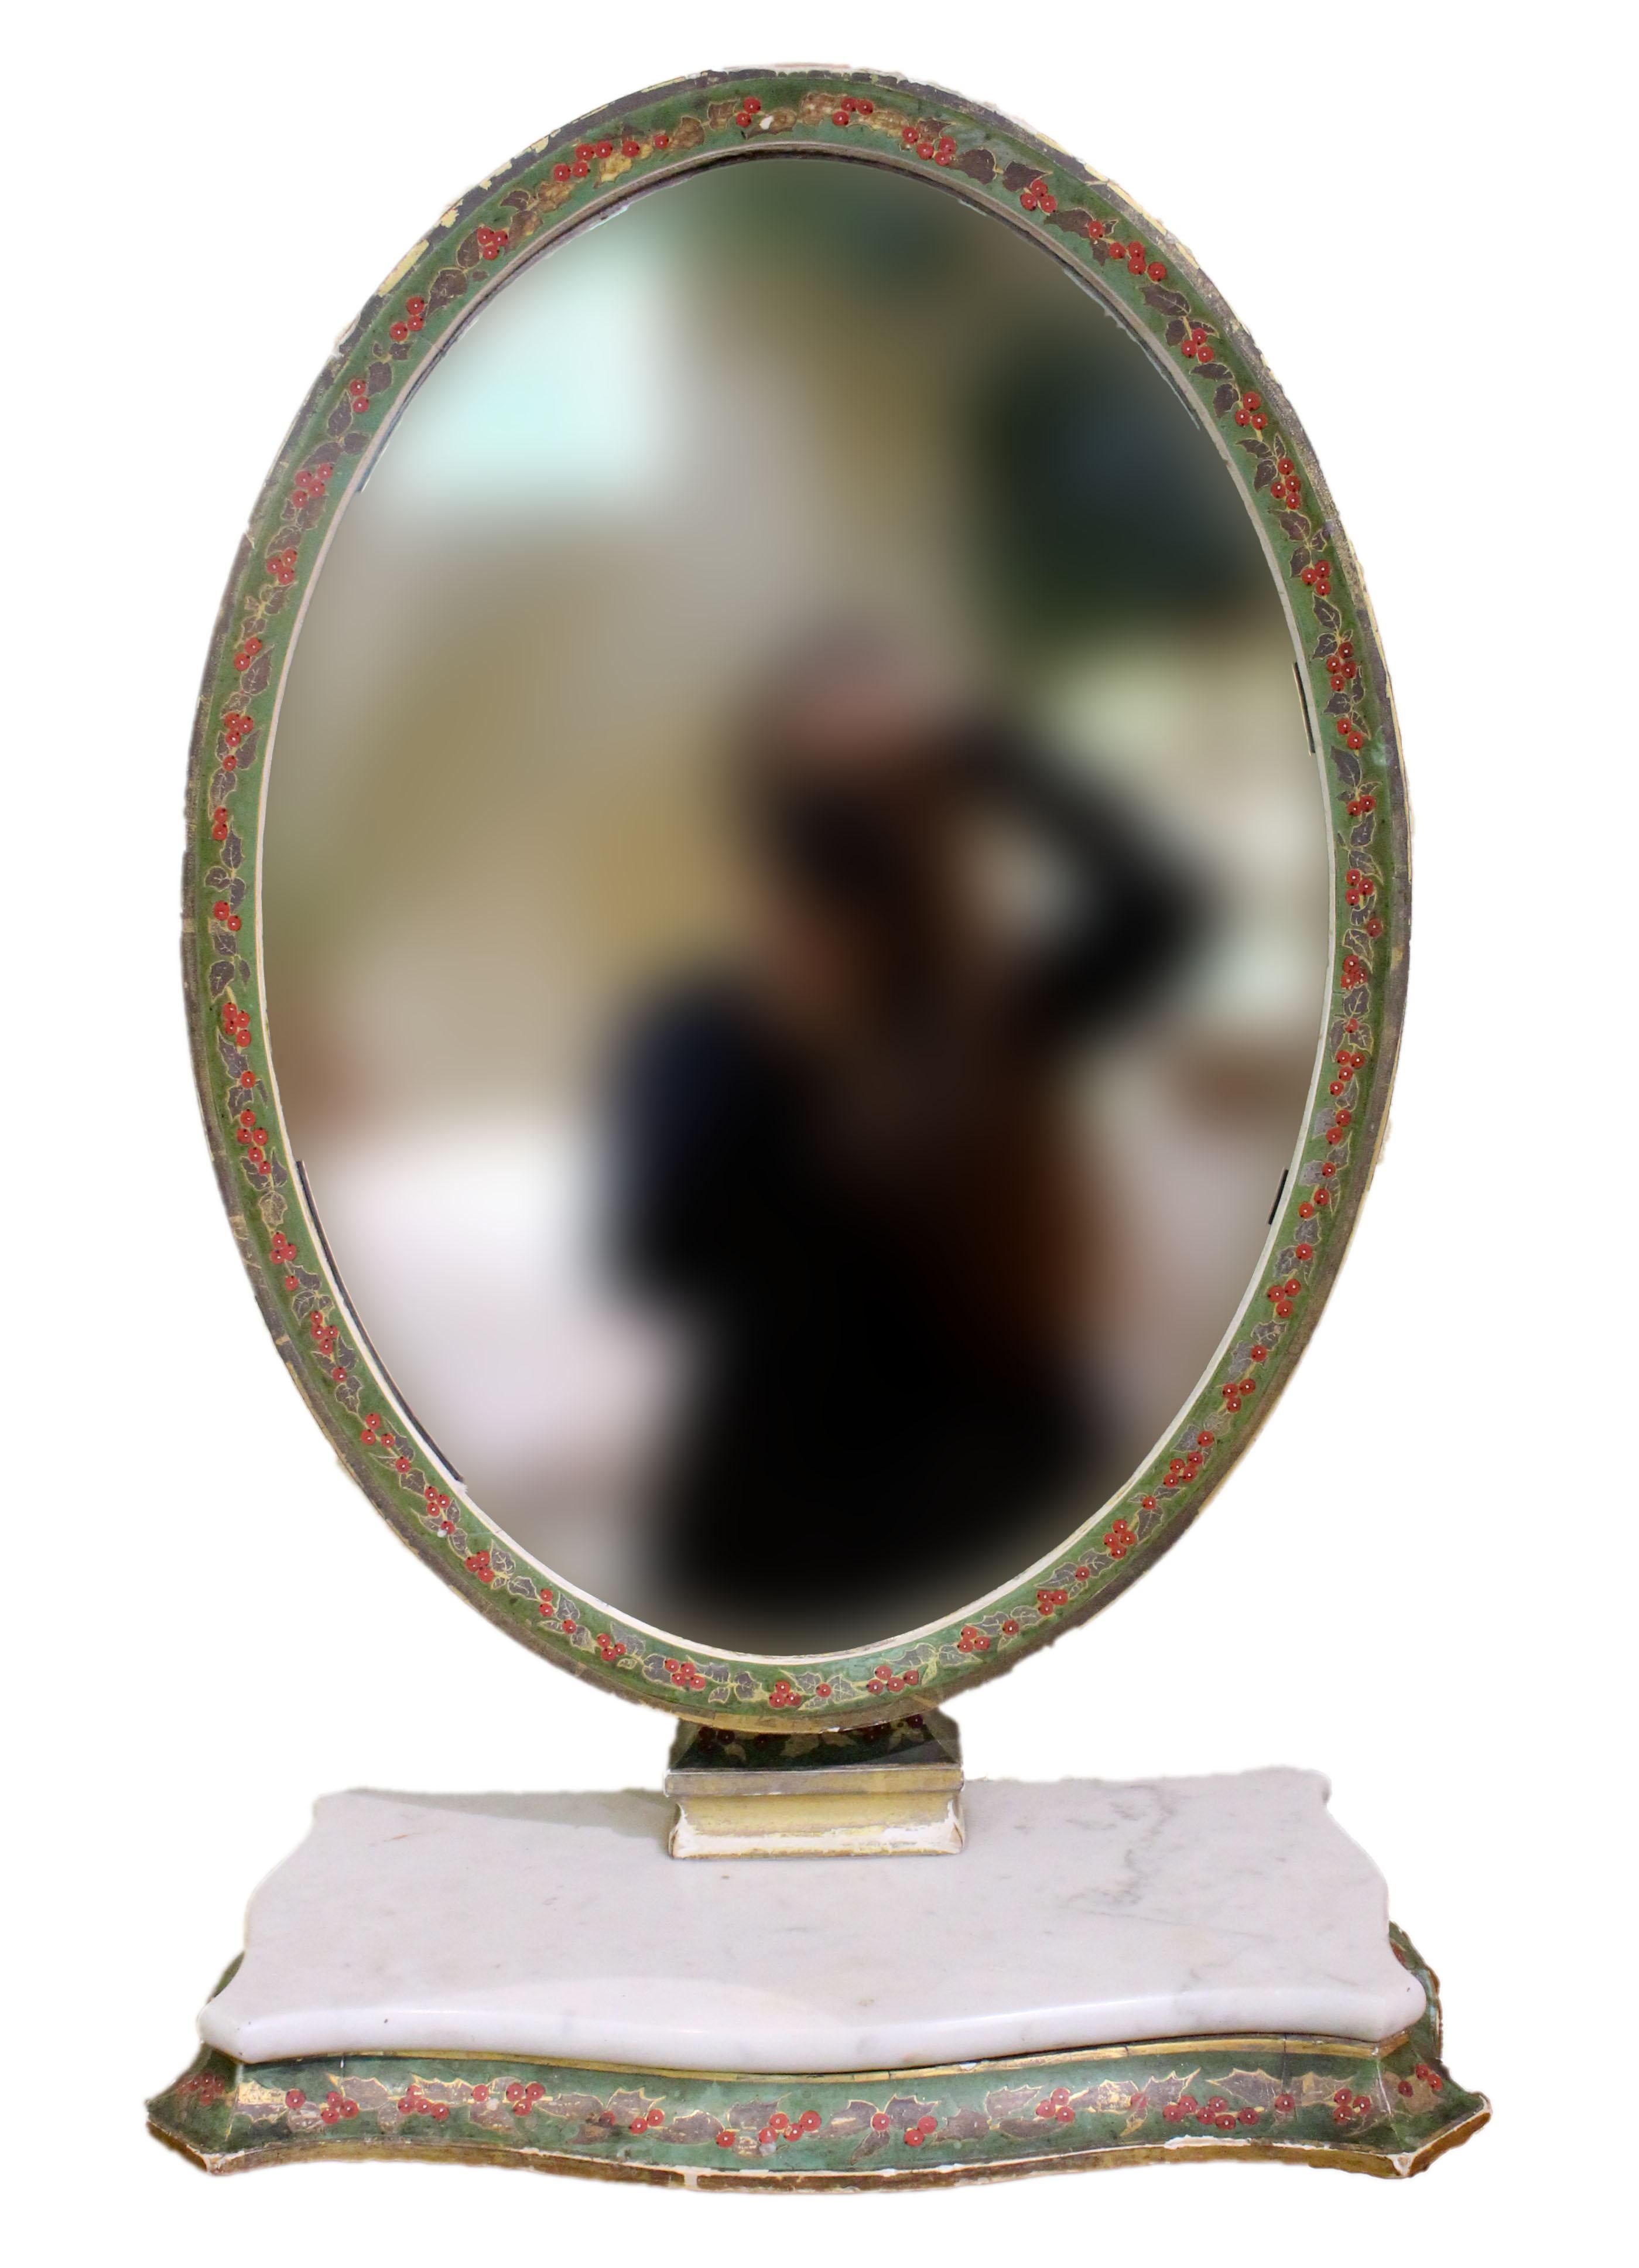 Miroir de coiffeuse vénitien ovale, vers 1860. Peint en vert avec des feuilles et des baies de houx et des bordures dorées. Surface de base en marbre. Double verrouillage pour ajuster l'angle du miroir. Provenance : Katharine Reid, ancienne